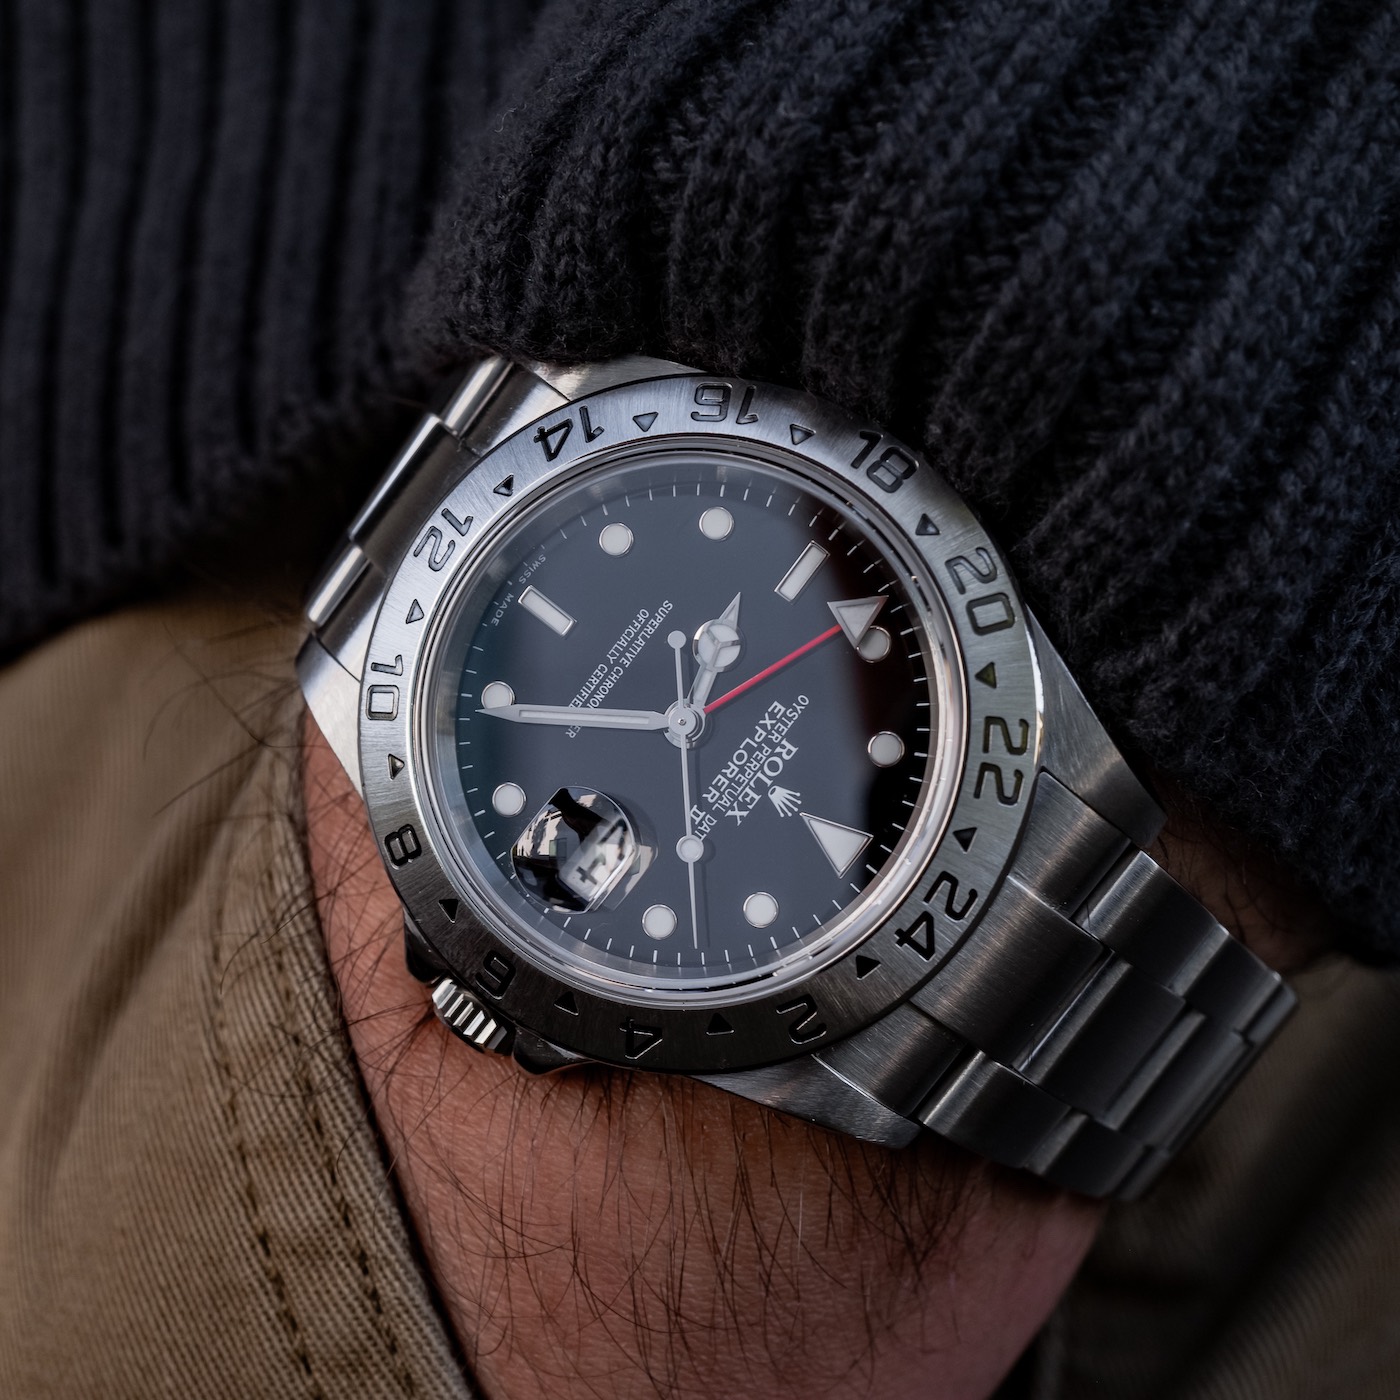 No Longer Made: Rolex Explorer II 16570 Watch | aBlogtoWatch